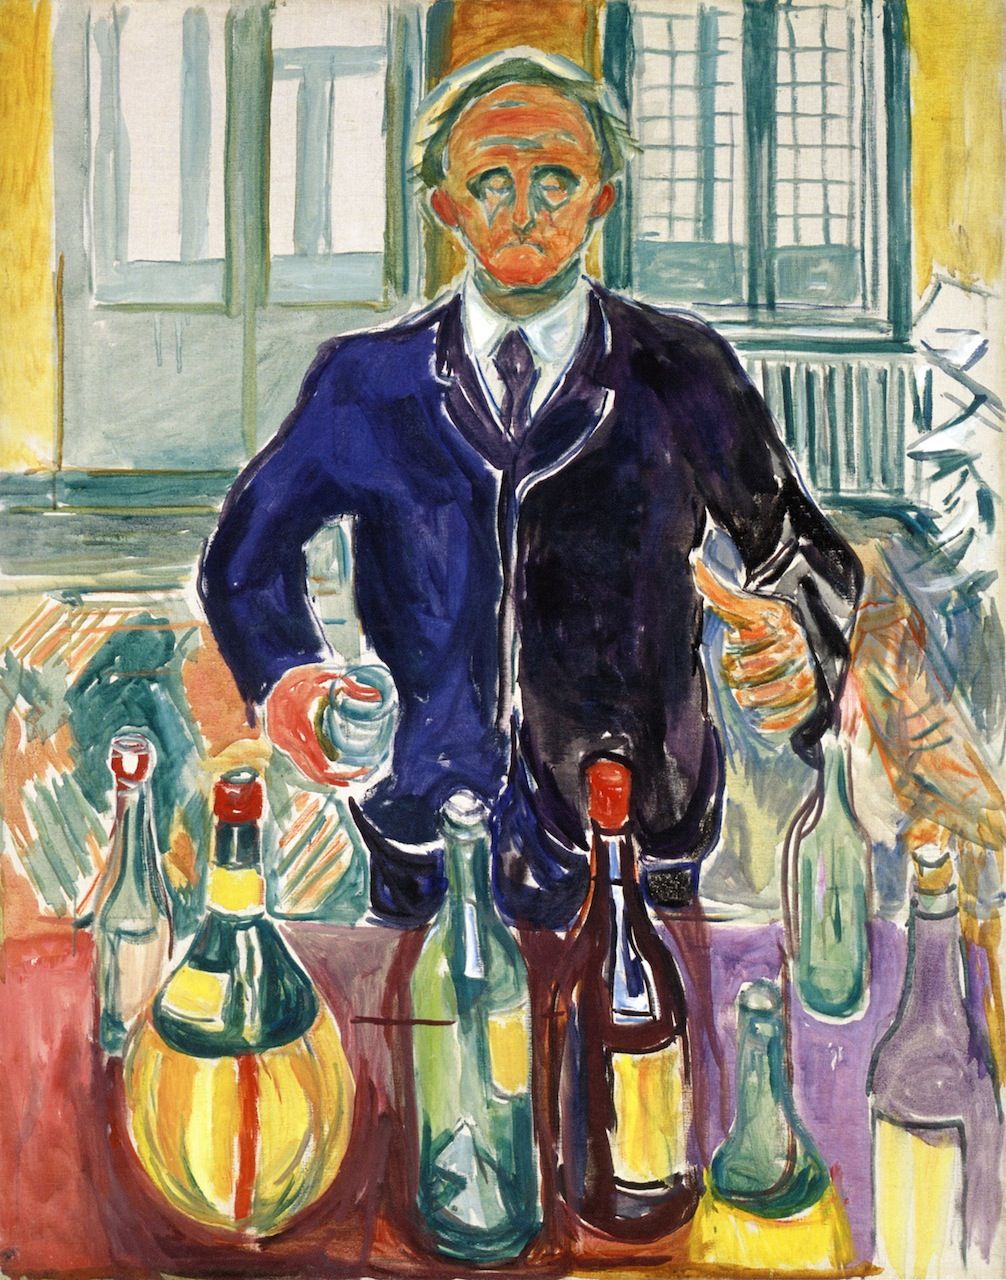 Эдвард Мунк. "Автопортрет с бутылками". 1938.